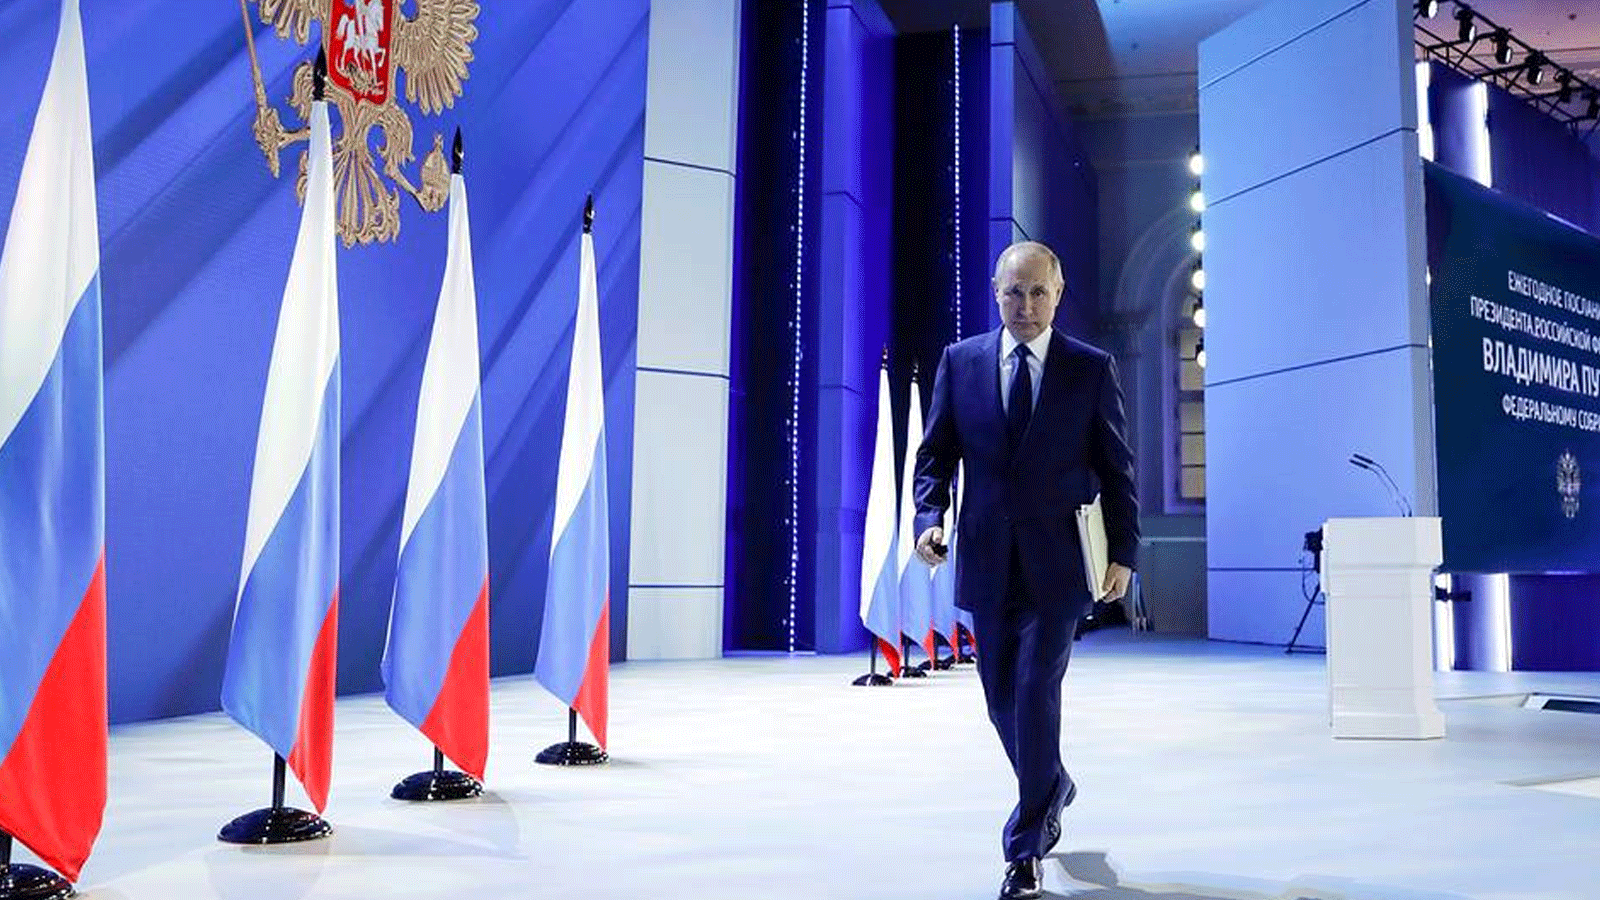 الرئيس الروسي فلاديمير بوتين يتوجه الى المنصة لالقاء خطابه السنوي